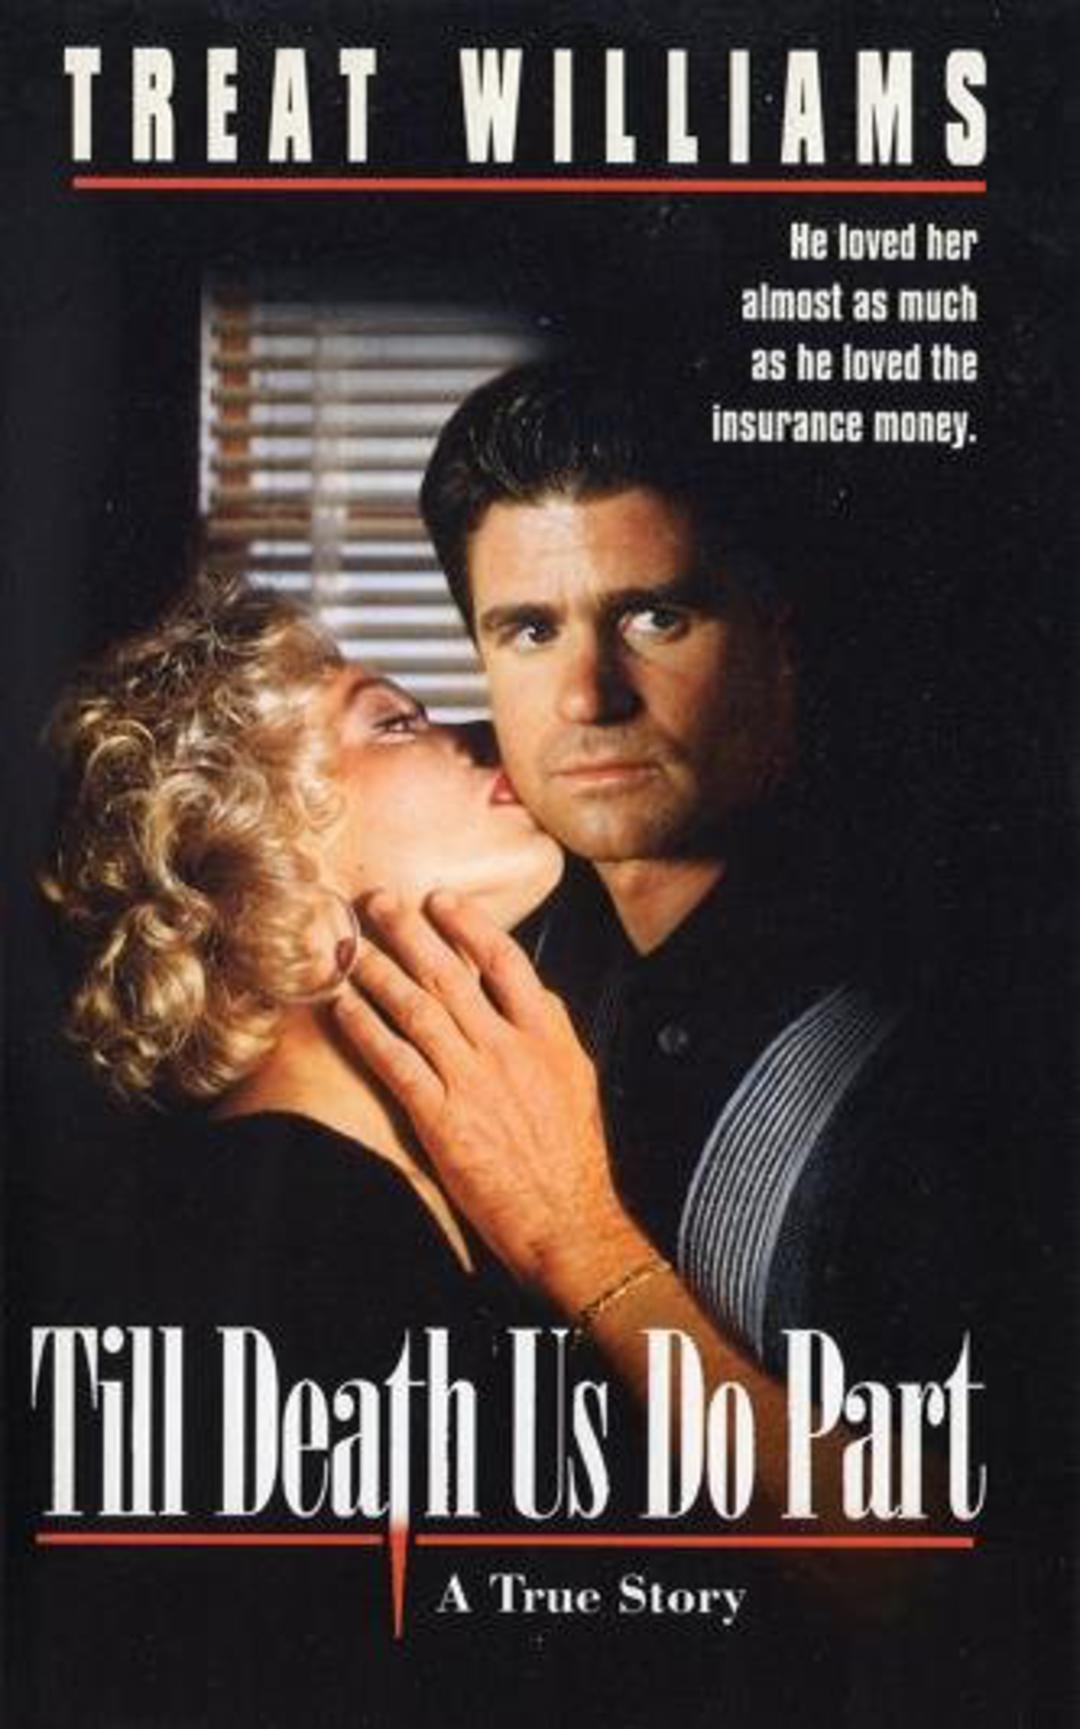 Til Death: Extra Large Movie Poster Image - Internet 